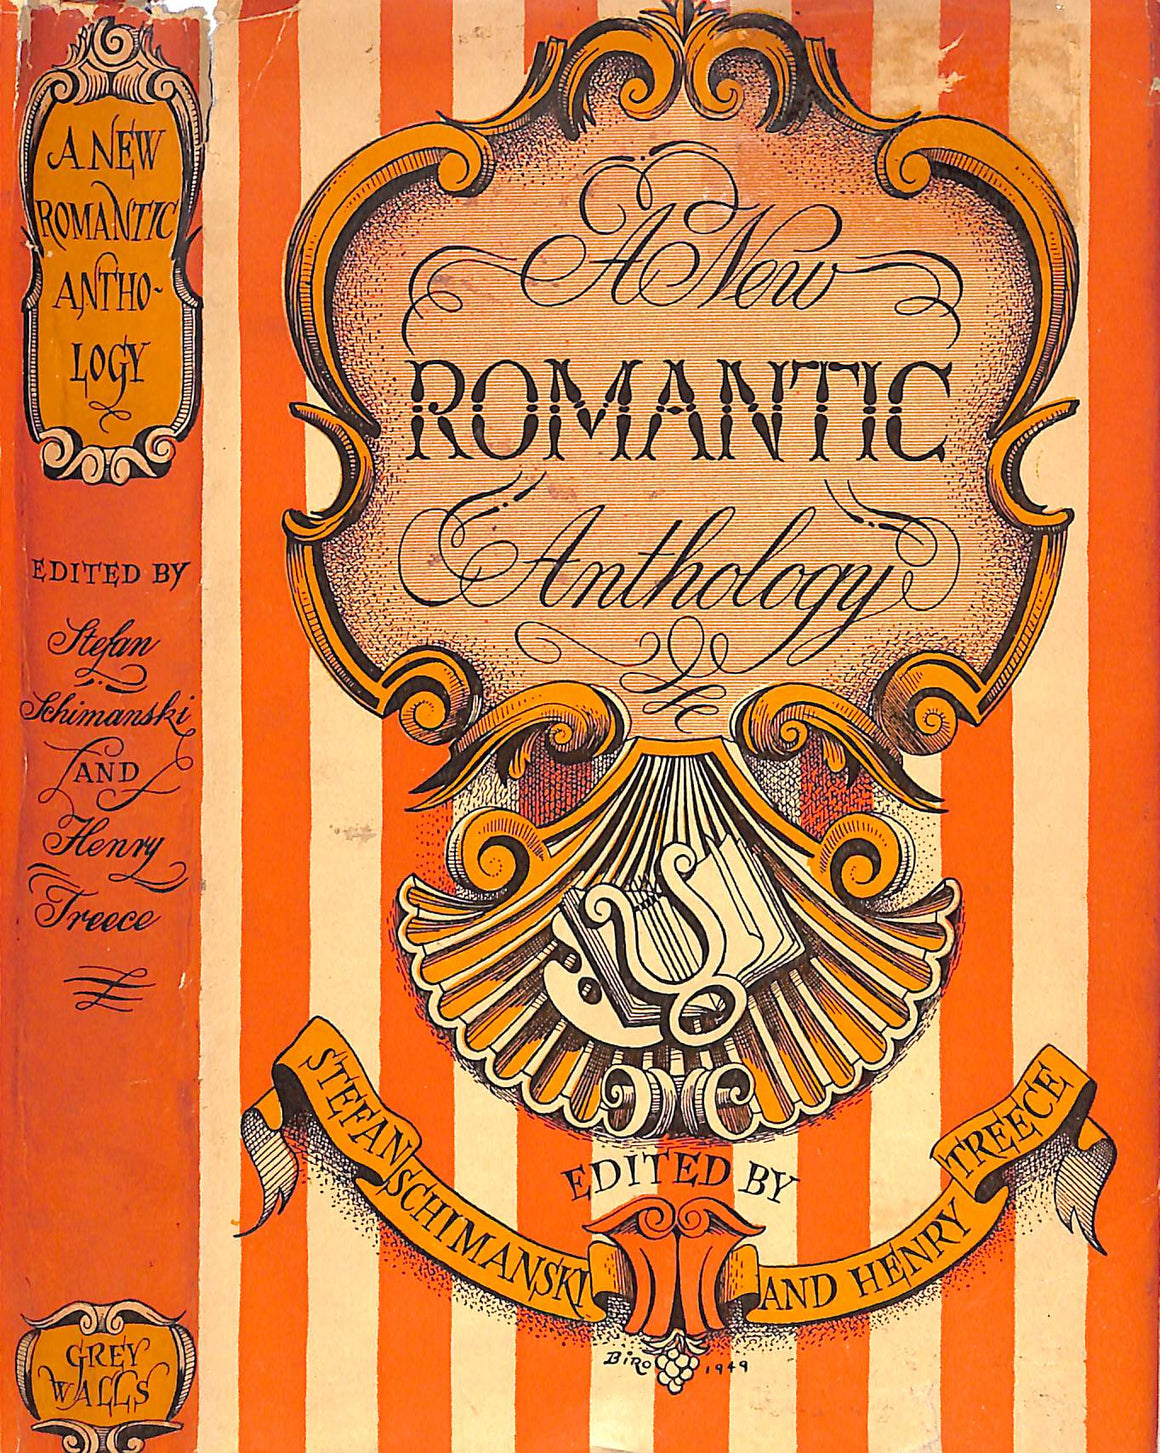 "A New Romantic Anthology" 1949 SCHIMANSKI, Stefan and TREECE, Henry